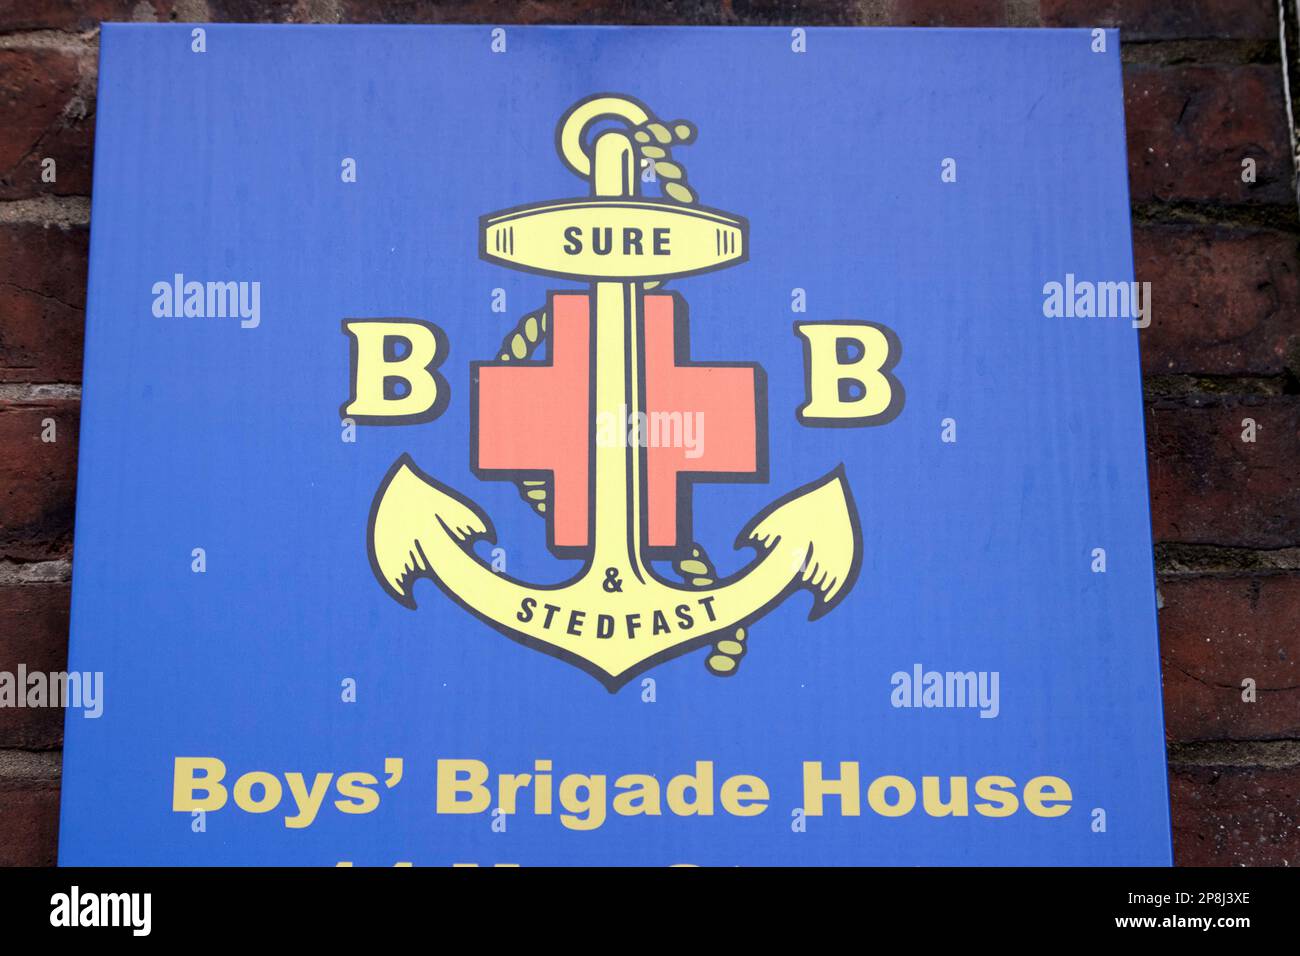 Logo de la brigade des garçons à l'extérieur de la brigade des garçons maison Belfast Irlande du Nord Royaume-Uni Banque D'Images